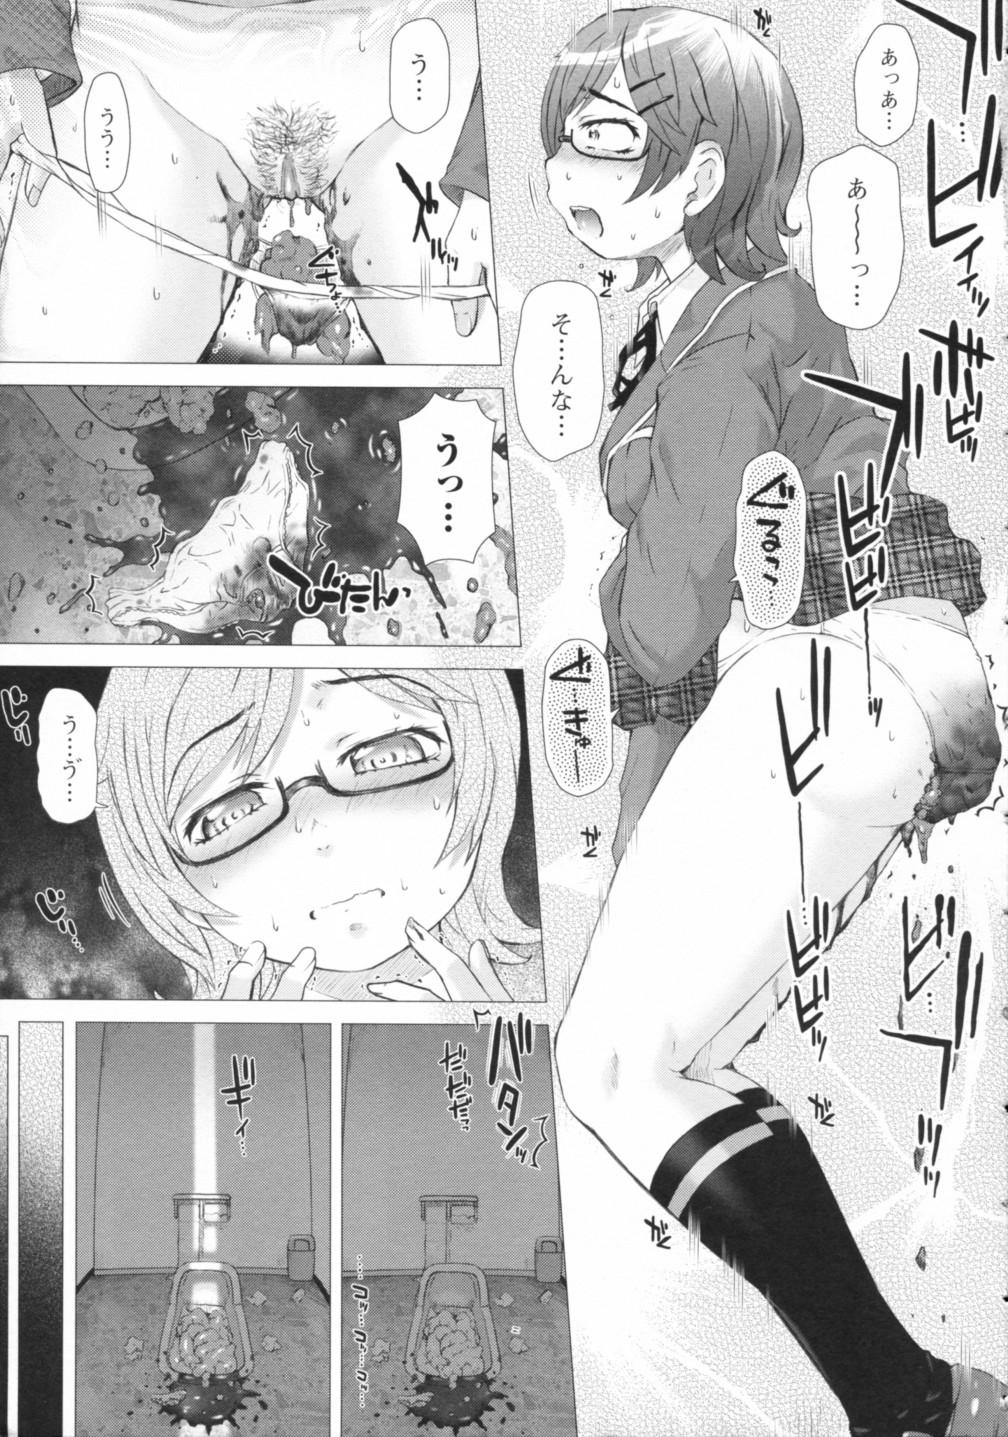 Oral Sex Nozoite wa Ikenai 2 - Do Not Peep! 2 Fantasy - Page 11